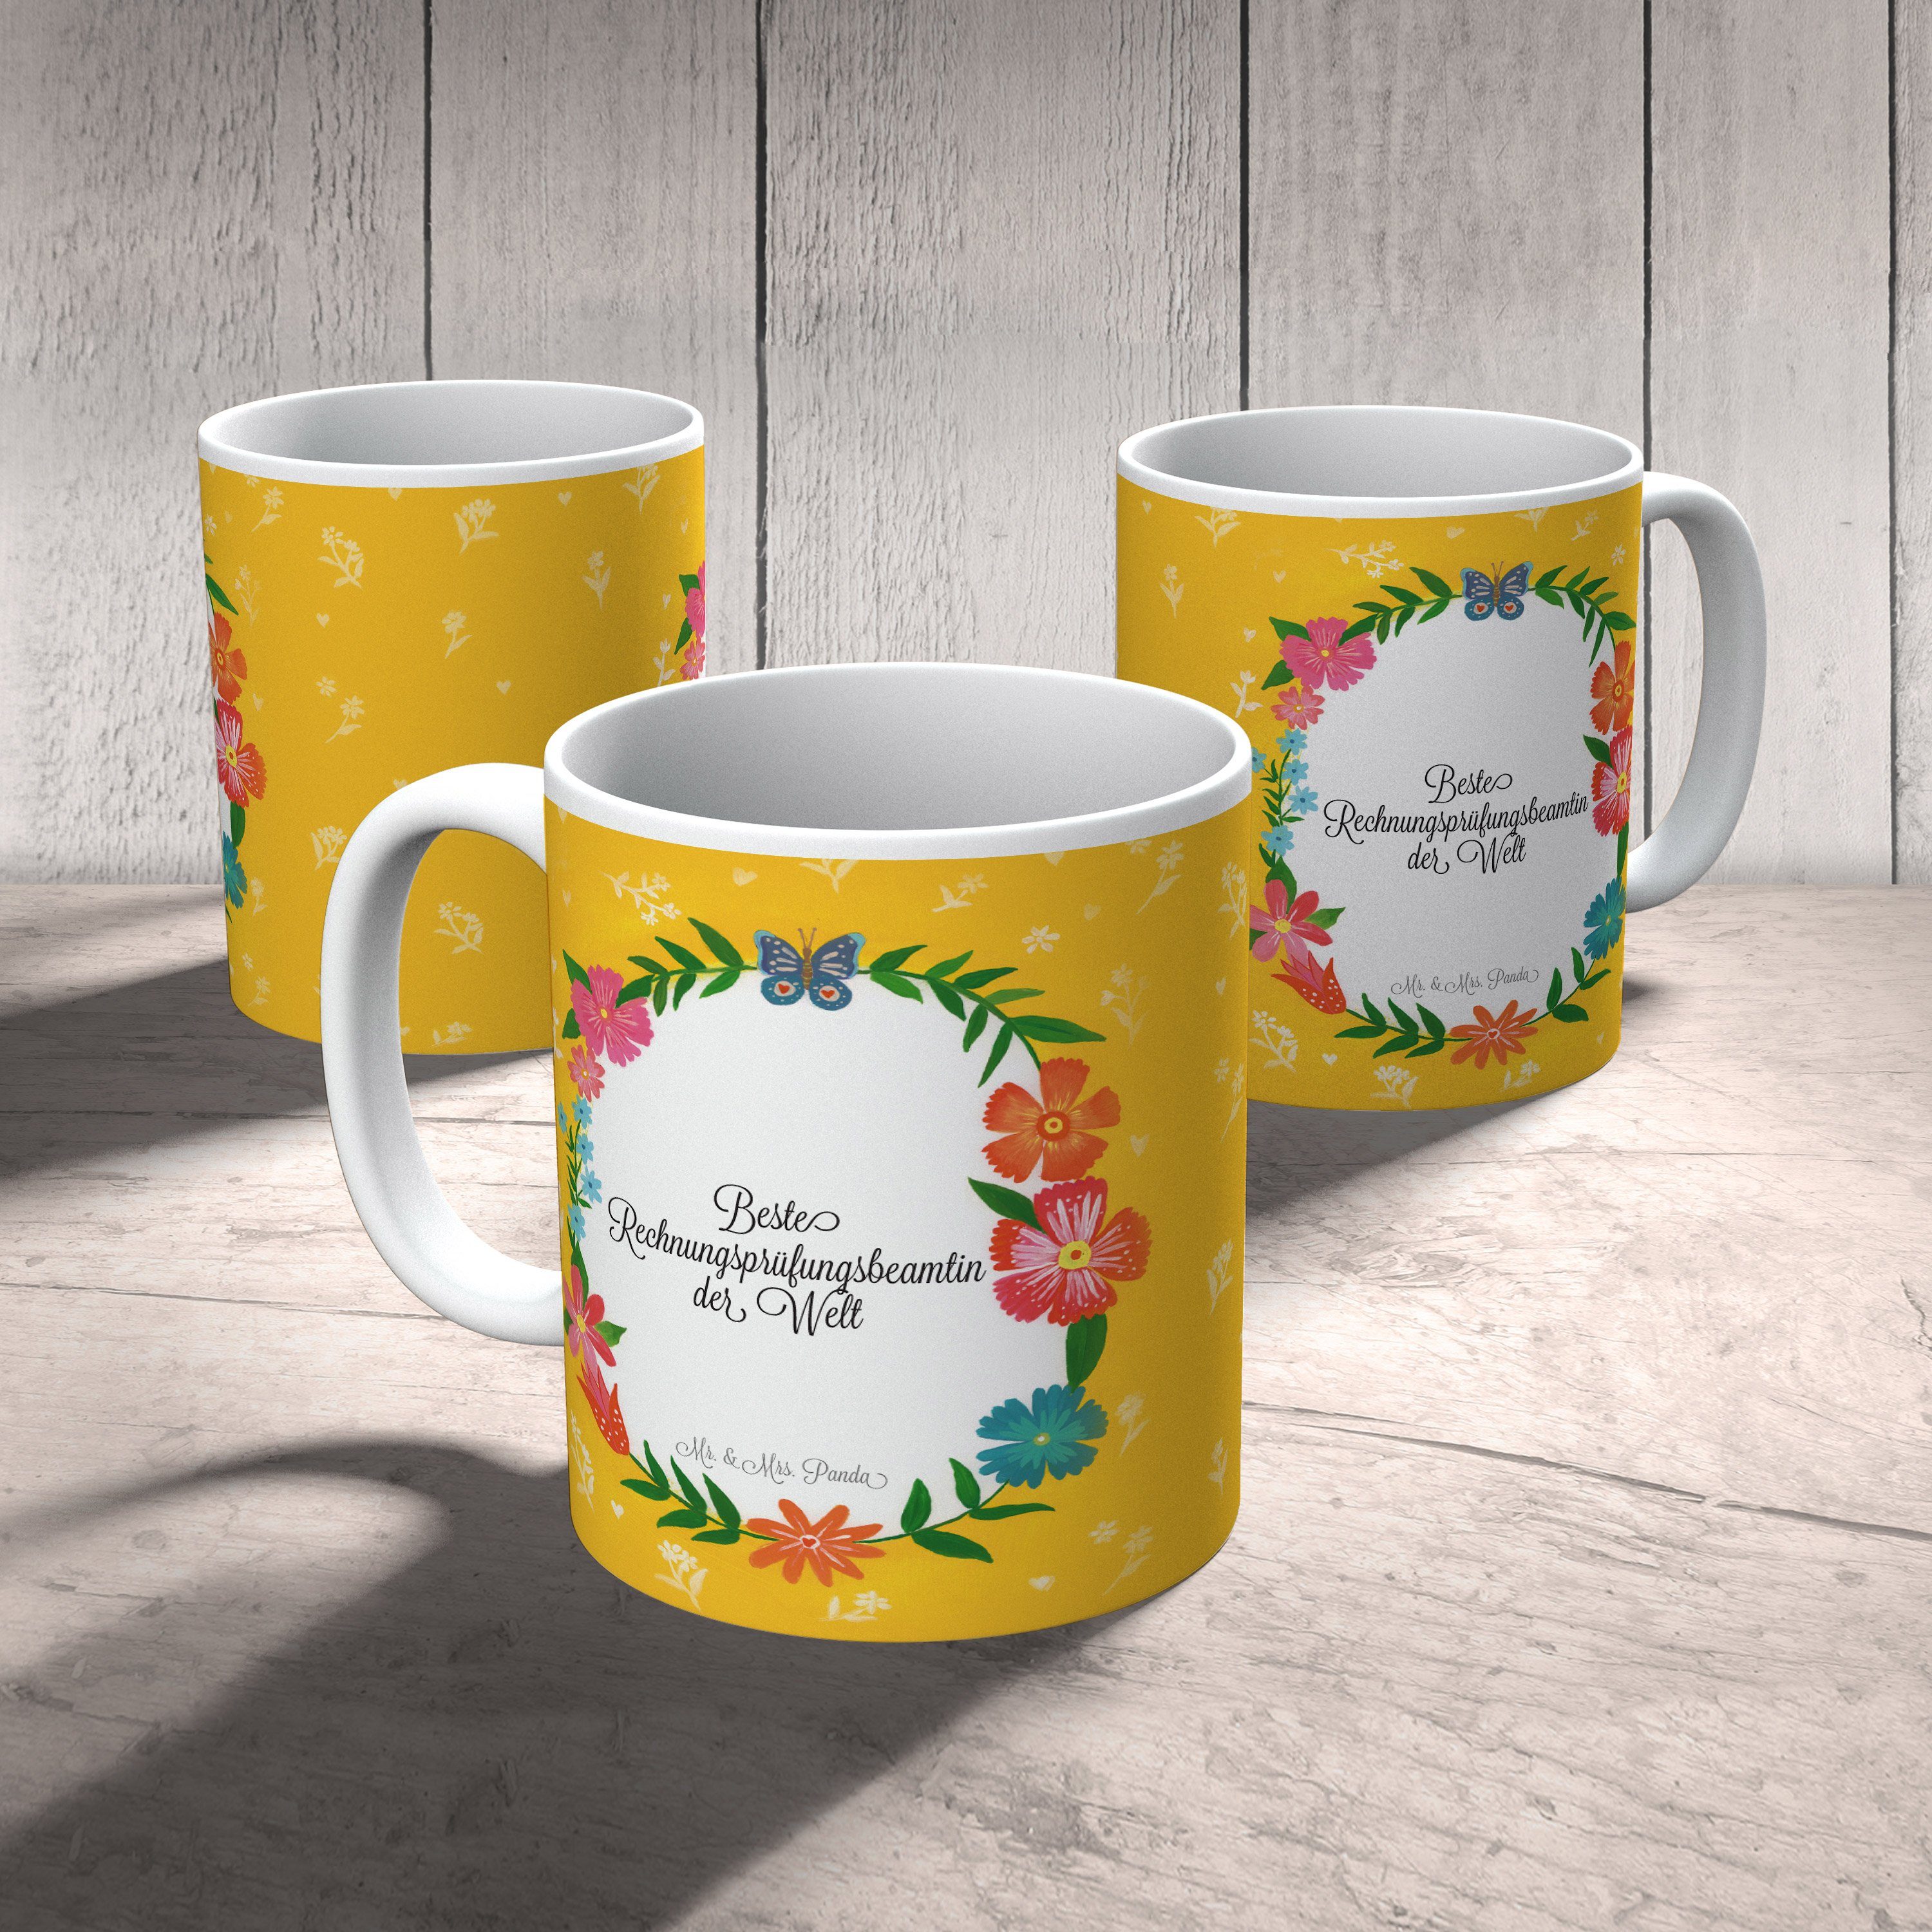 Mr. & Mrs. Tasse Kaffeet, Abschluss, Geschenk, - Rechnungsprüfungsbeamtin Panda Keramik Keramiktasse